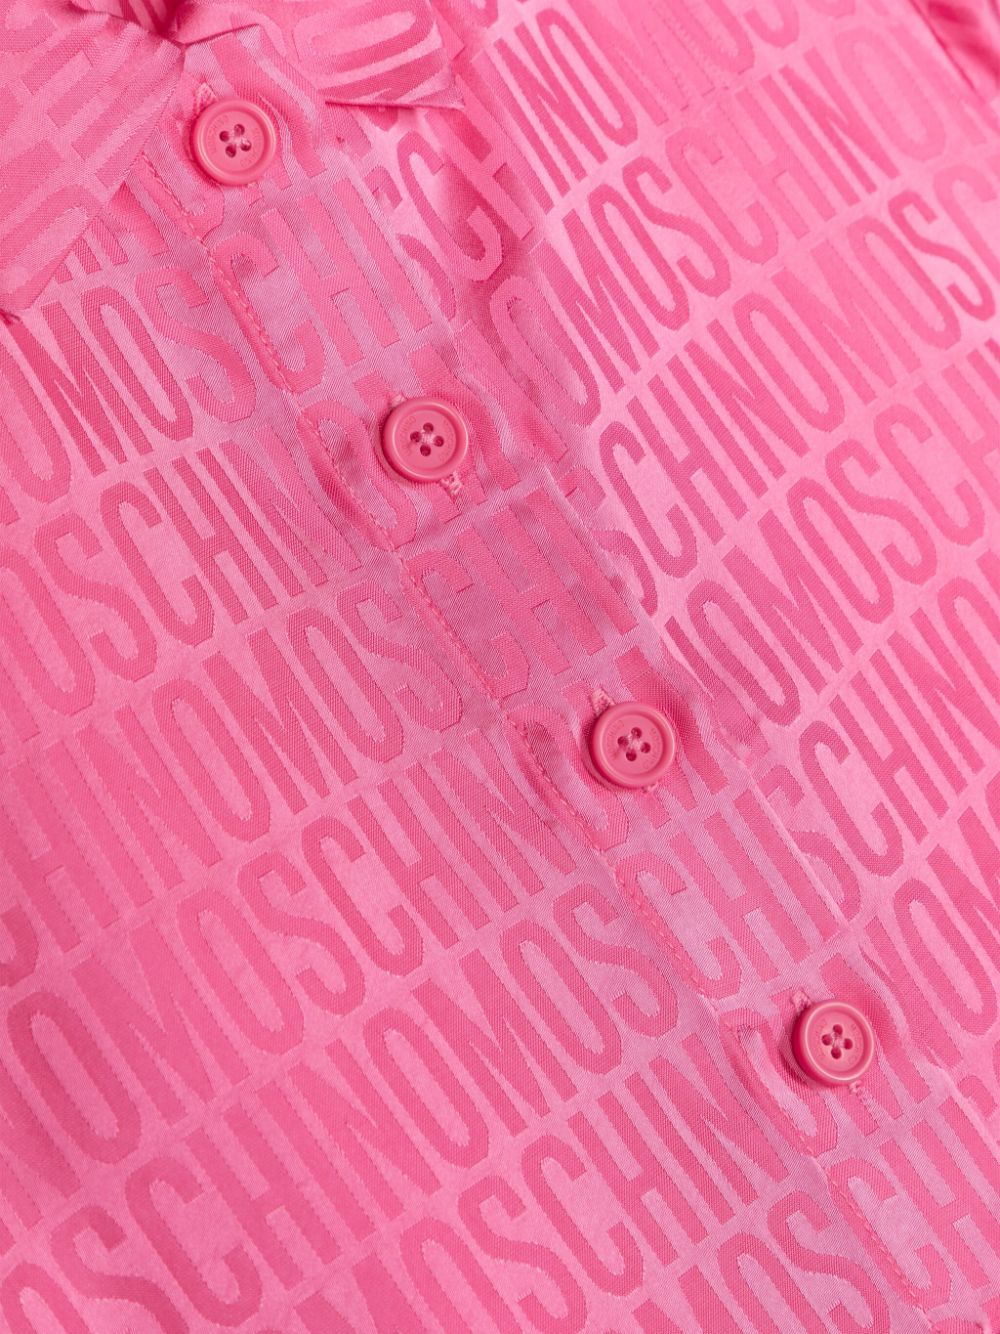 Chemise rose fille